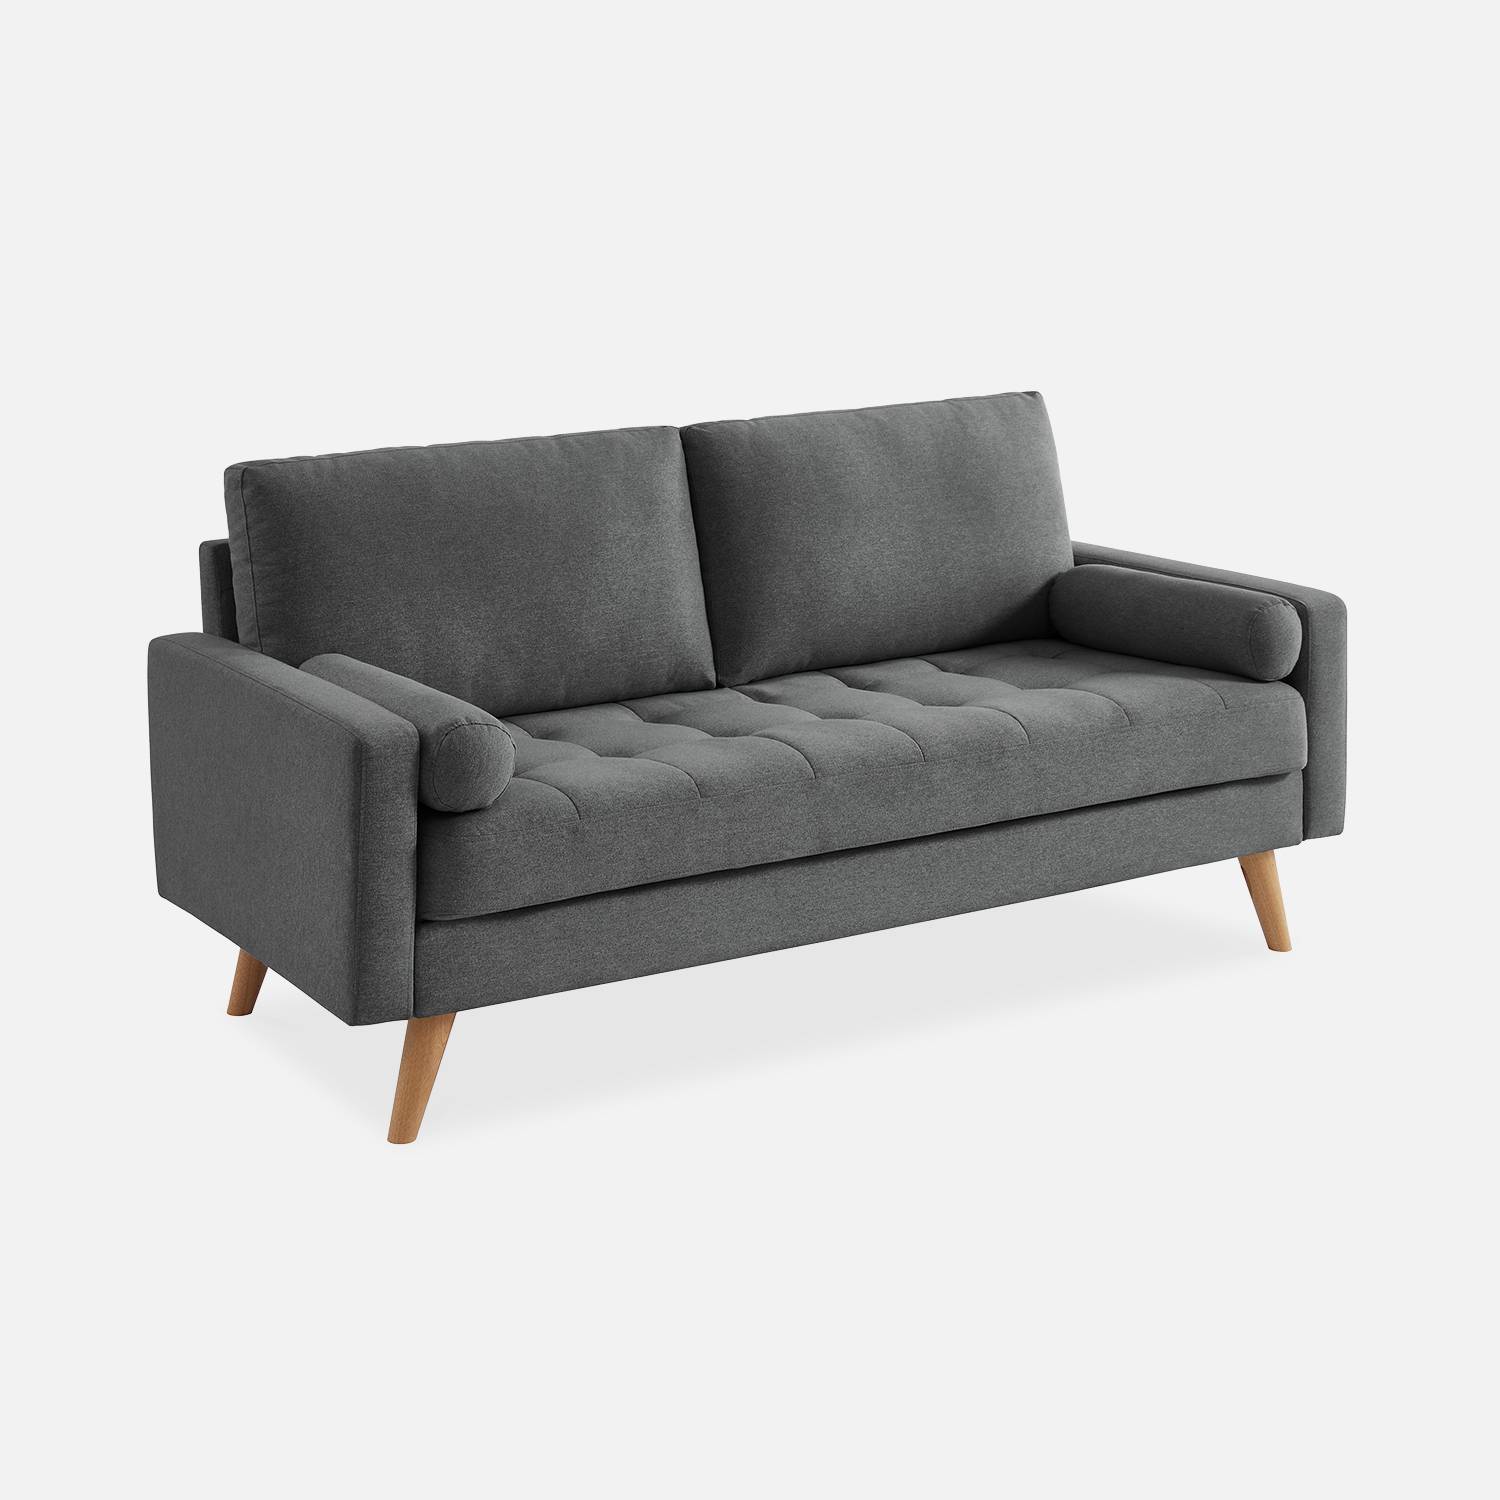 Sofá de 3 plazas en tejido gris oscuro, sofá escandinavo recto, patas de madera | sweeek